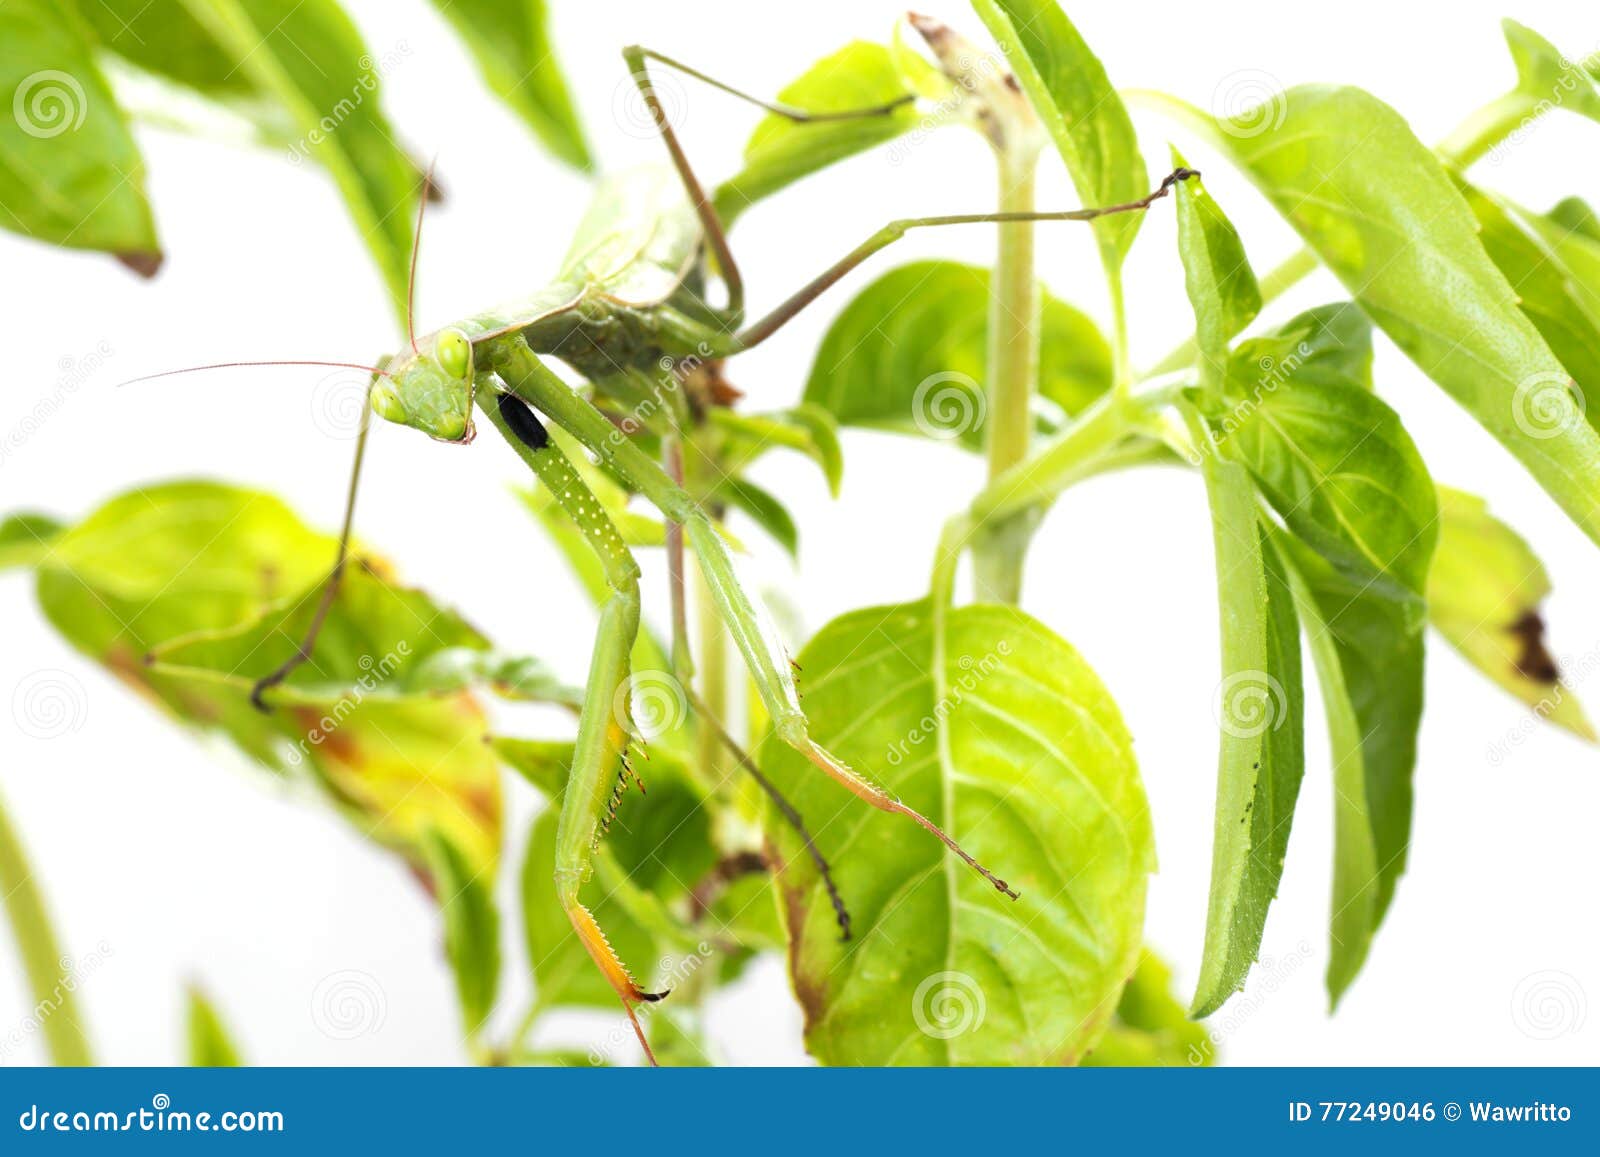 european mantis or praying mantis, mantis religiosa, on plant. i